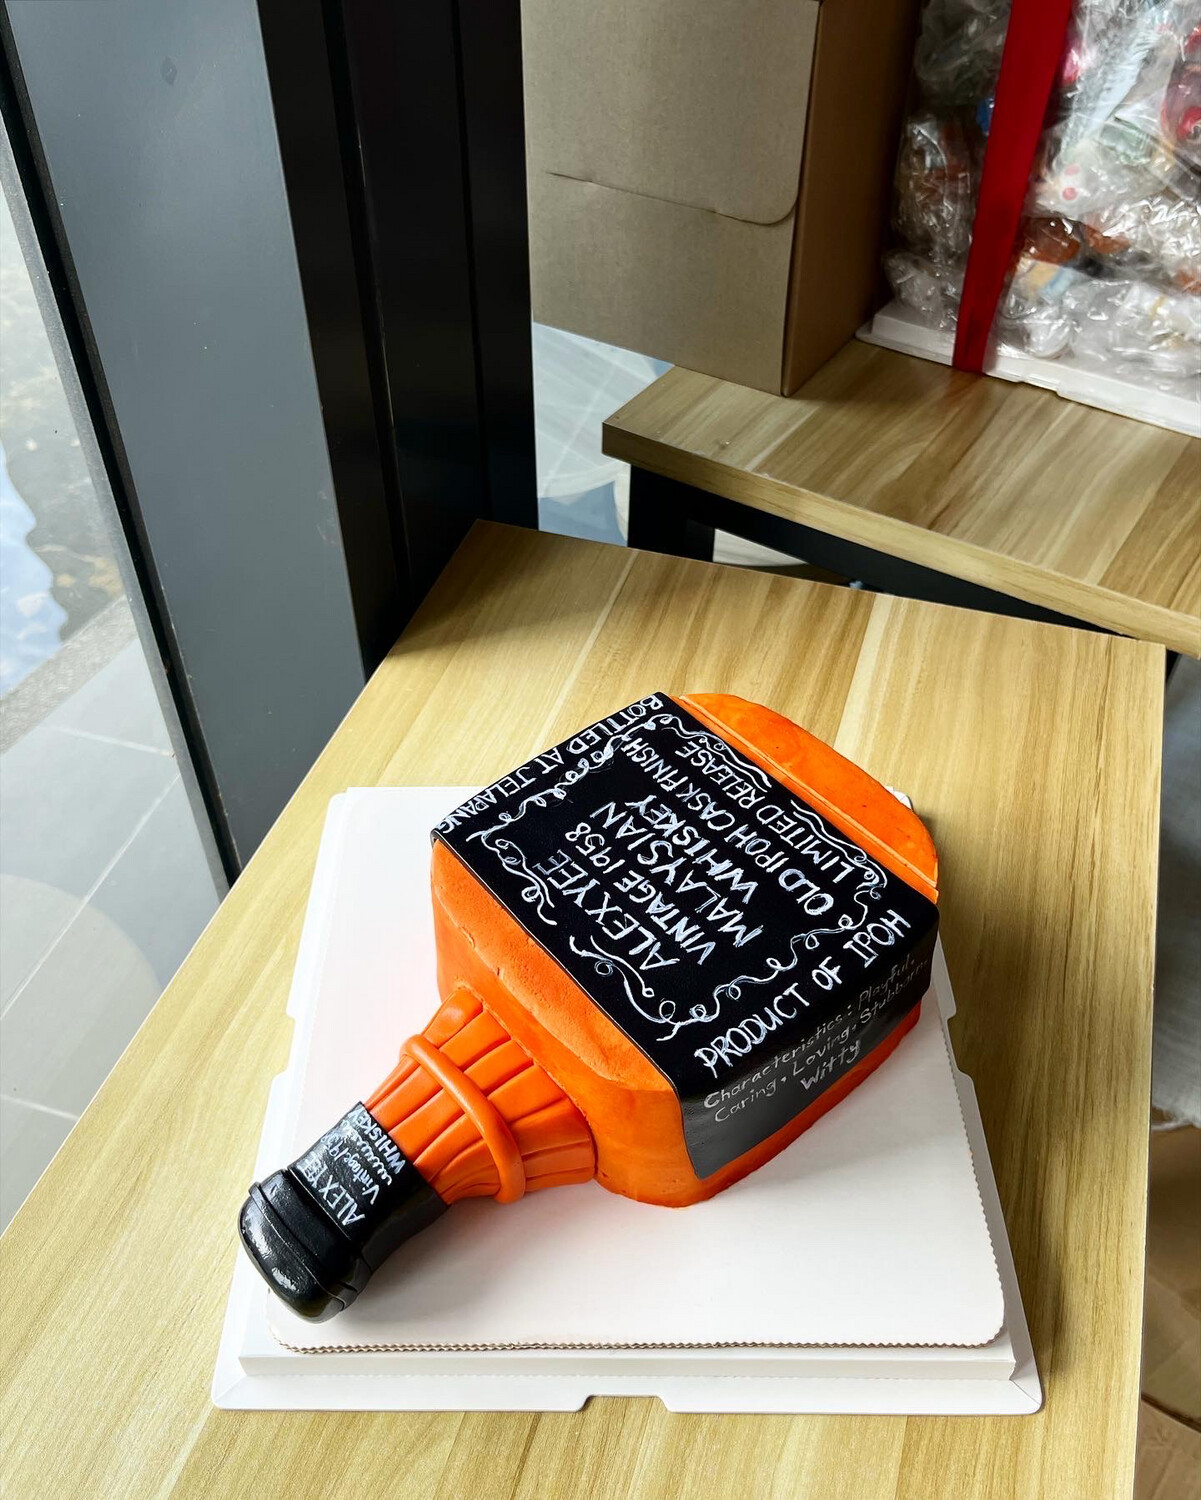 Whisky Bottle Cake 2 (no Alcohol)